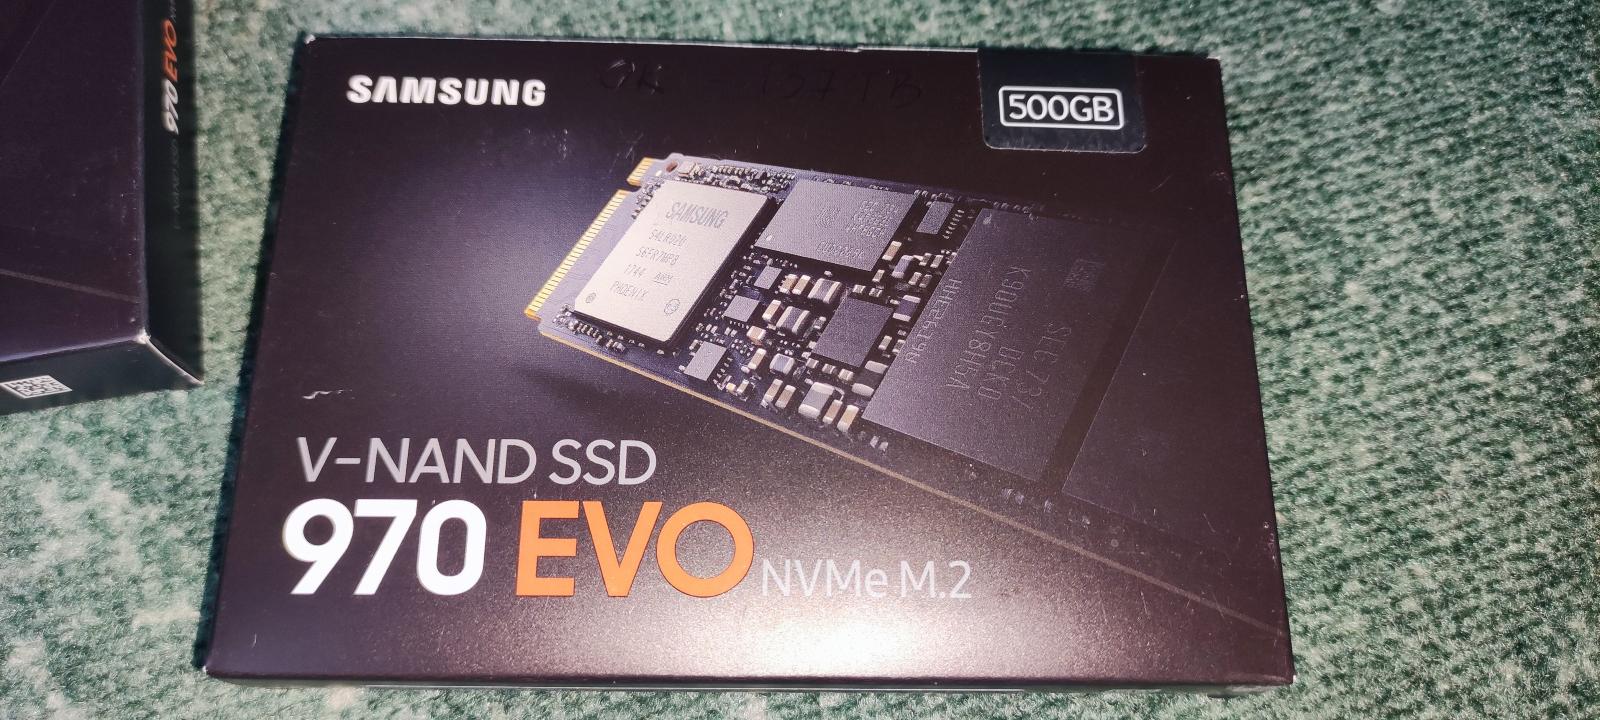 Samsung SSD 970 EVO 500GB - Počítače a hry